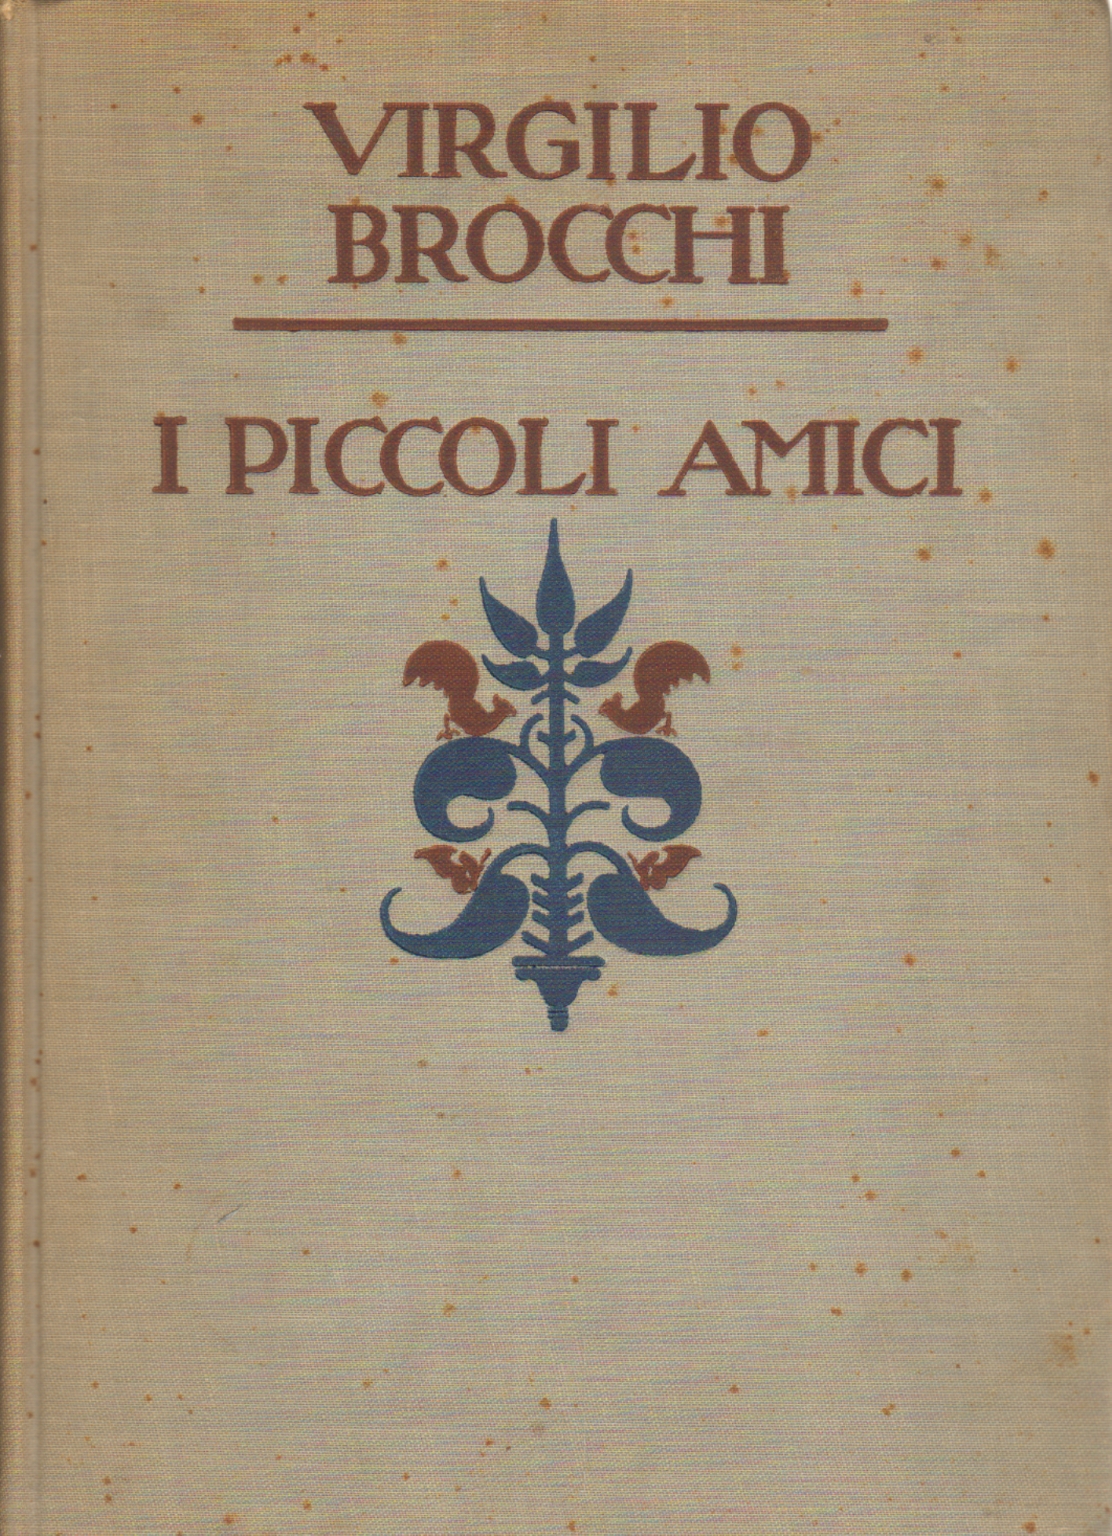 I piccoli amici, Virgilio Brocchi